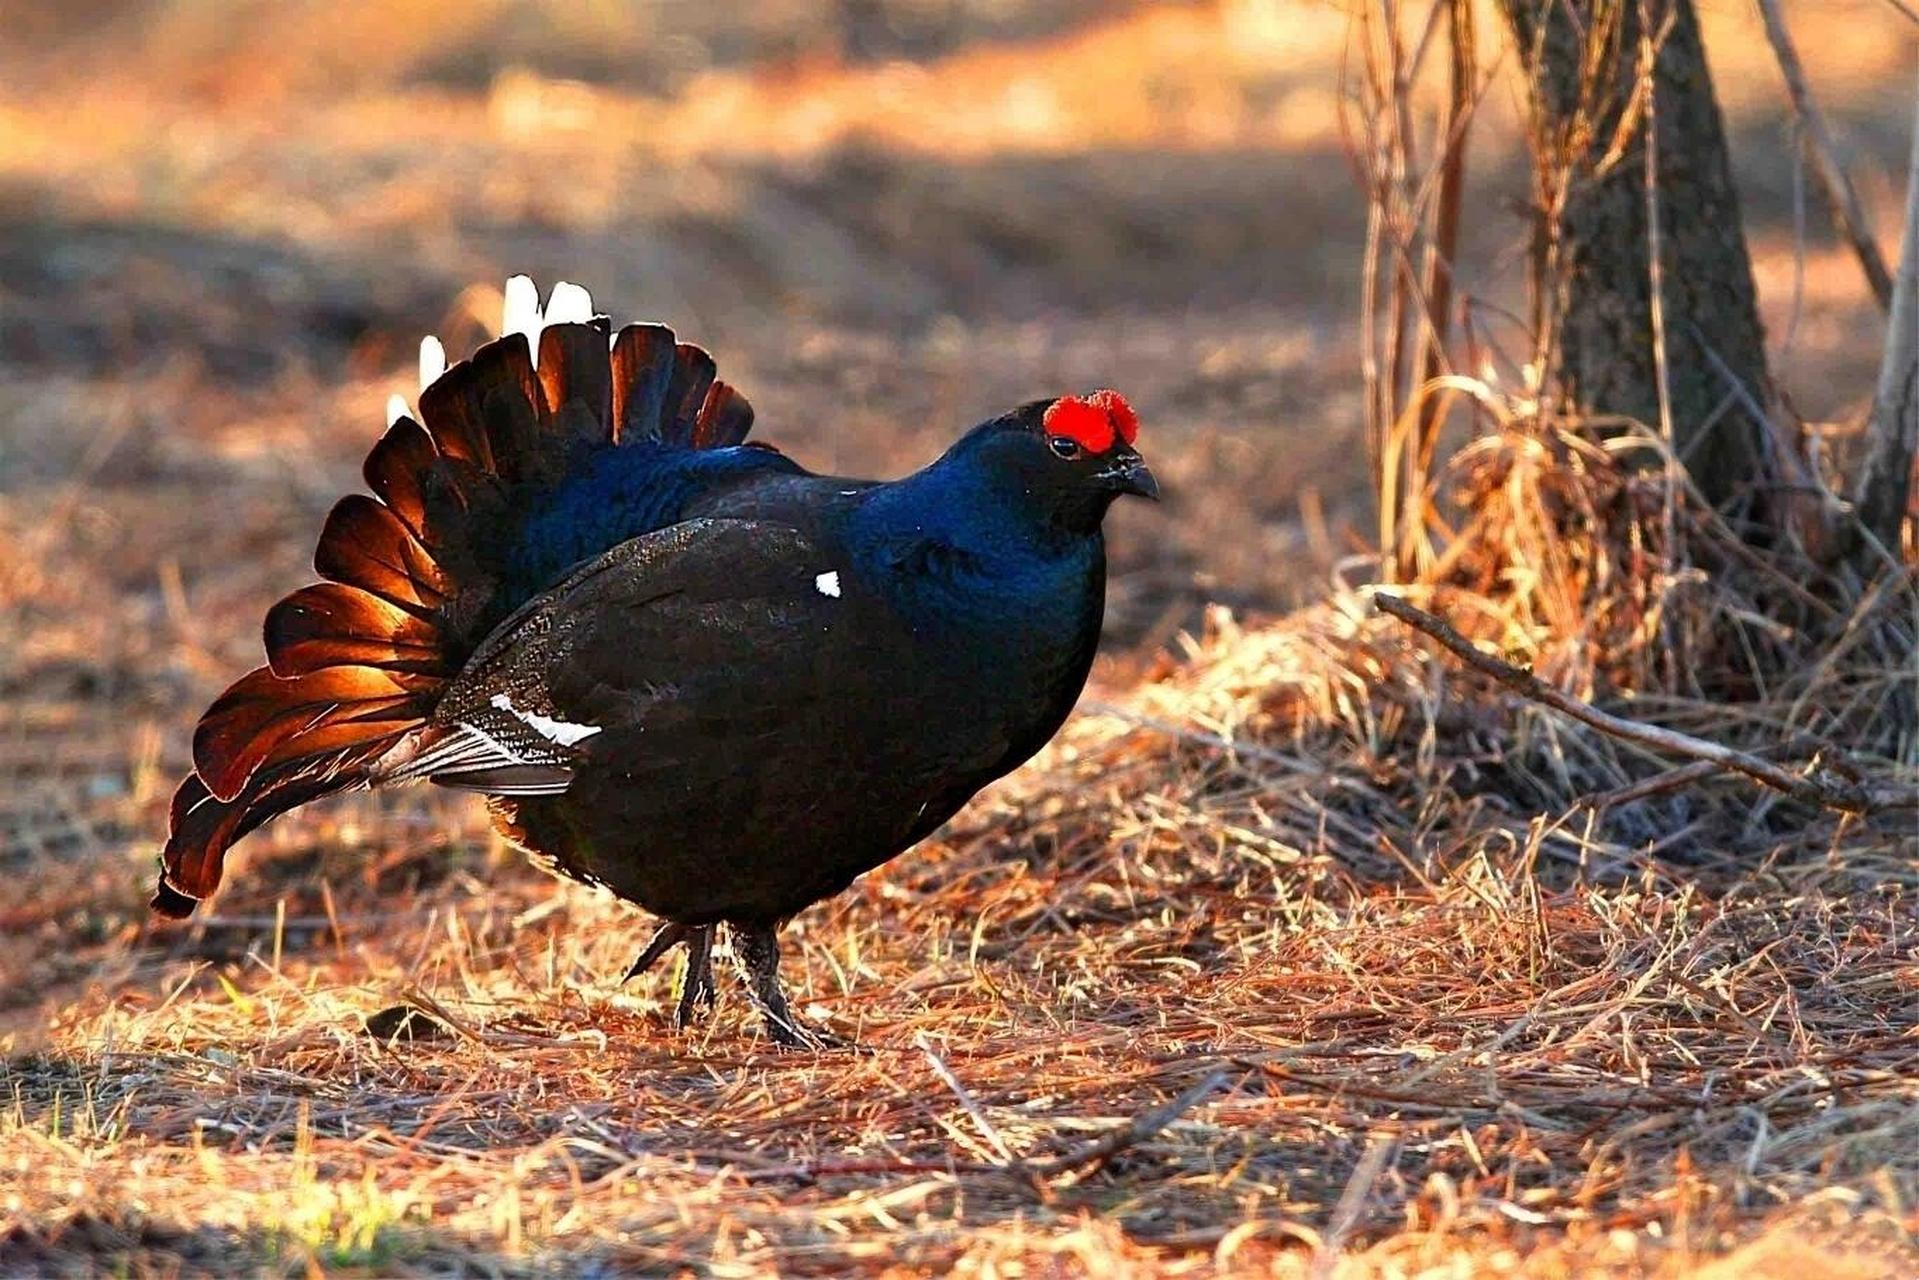 黑琴鸡 黑琴鸡又称黑野鸡,乌鸡,是鸡形目松鸡科琴鸡属的鸟类动物